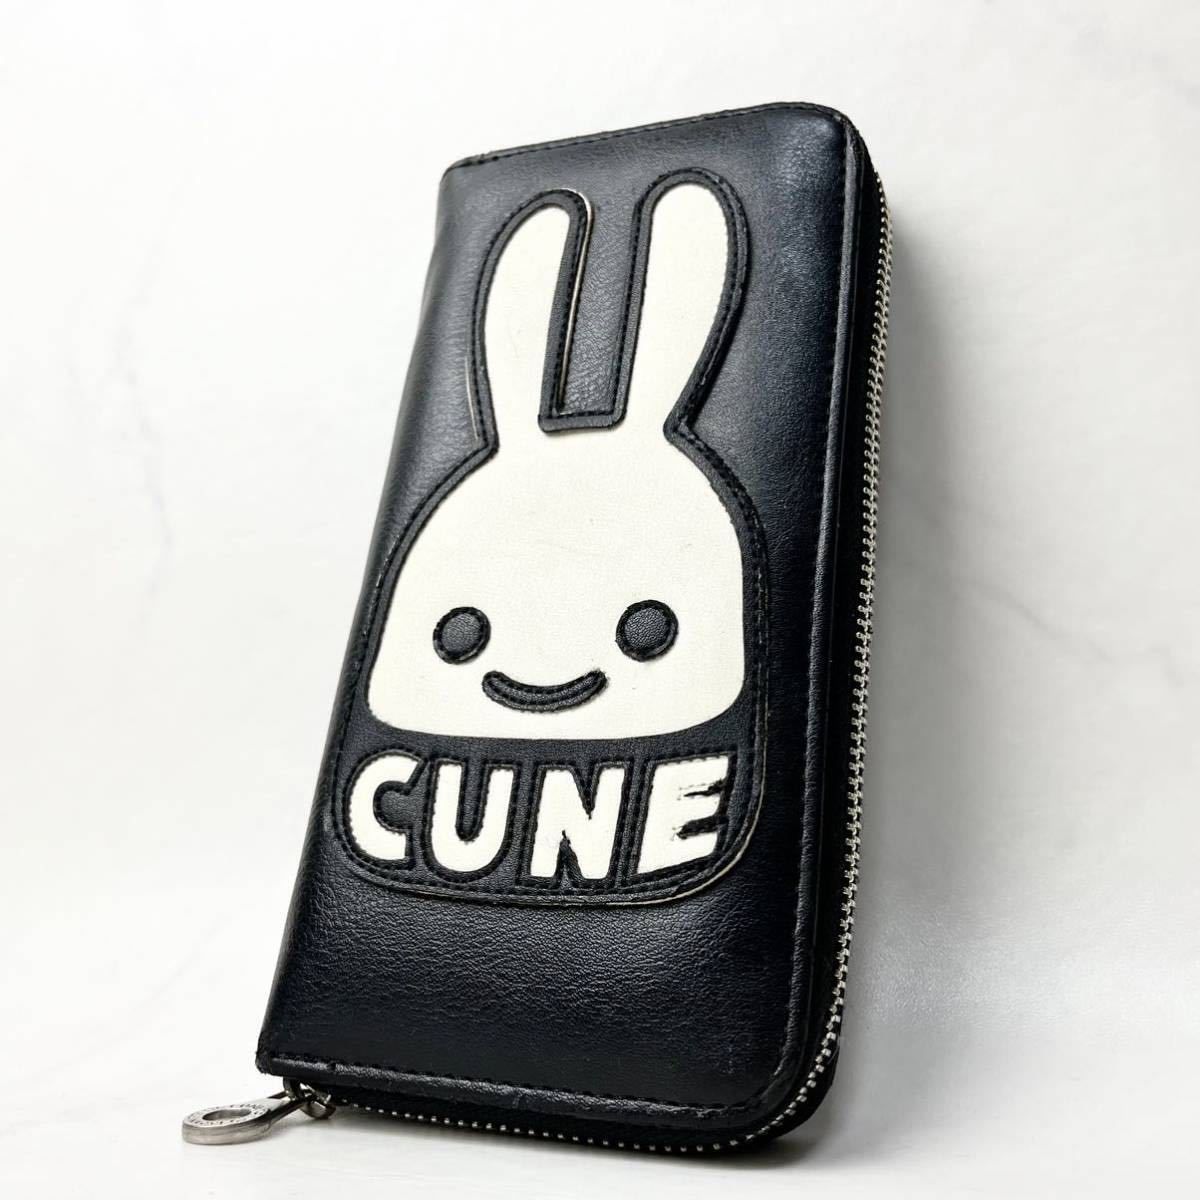 ヤフオク! -「cune 財布」(ファッション小物) の落札相場・落札価格